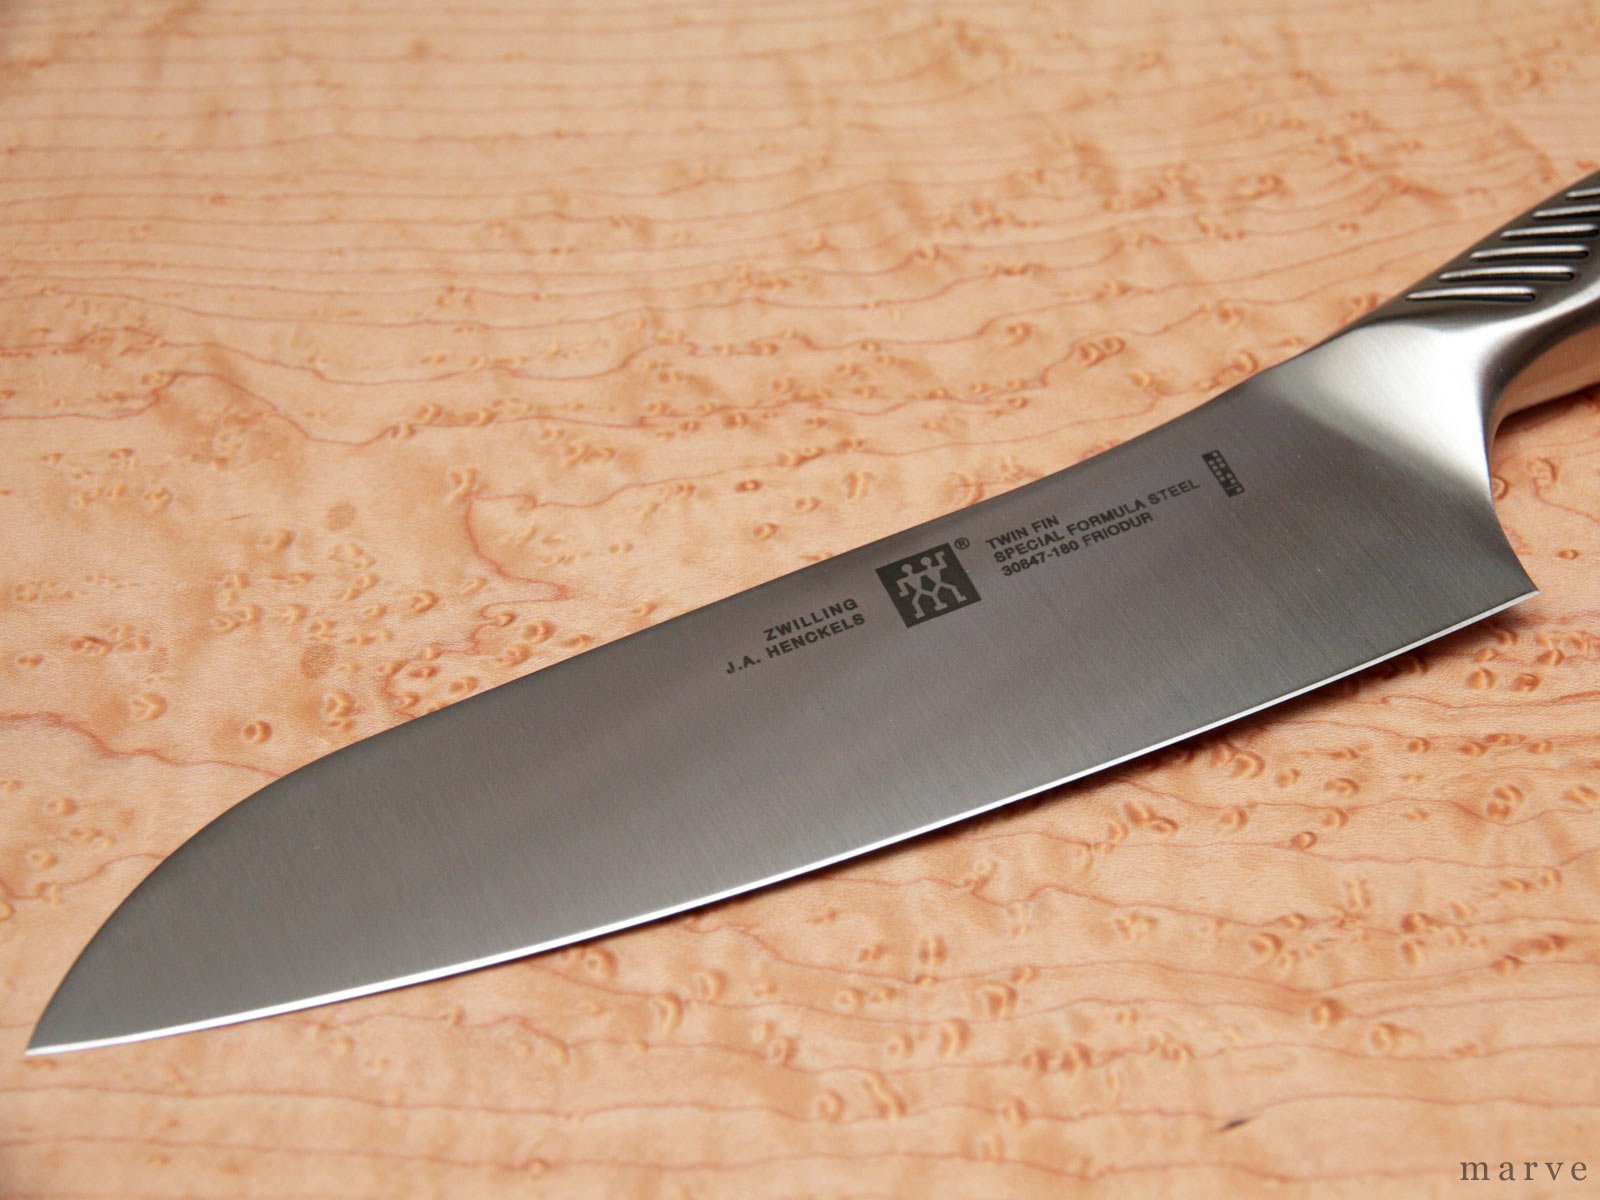 誠実 c355008-5マルチパーパスナイフ6種類ケース付 sushitai.com.mx